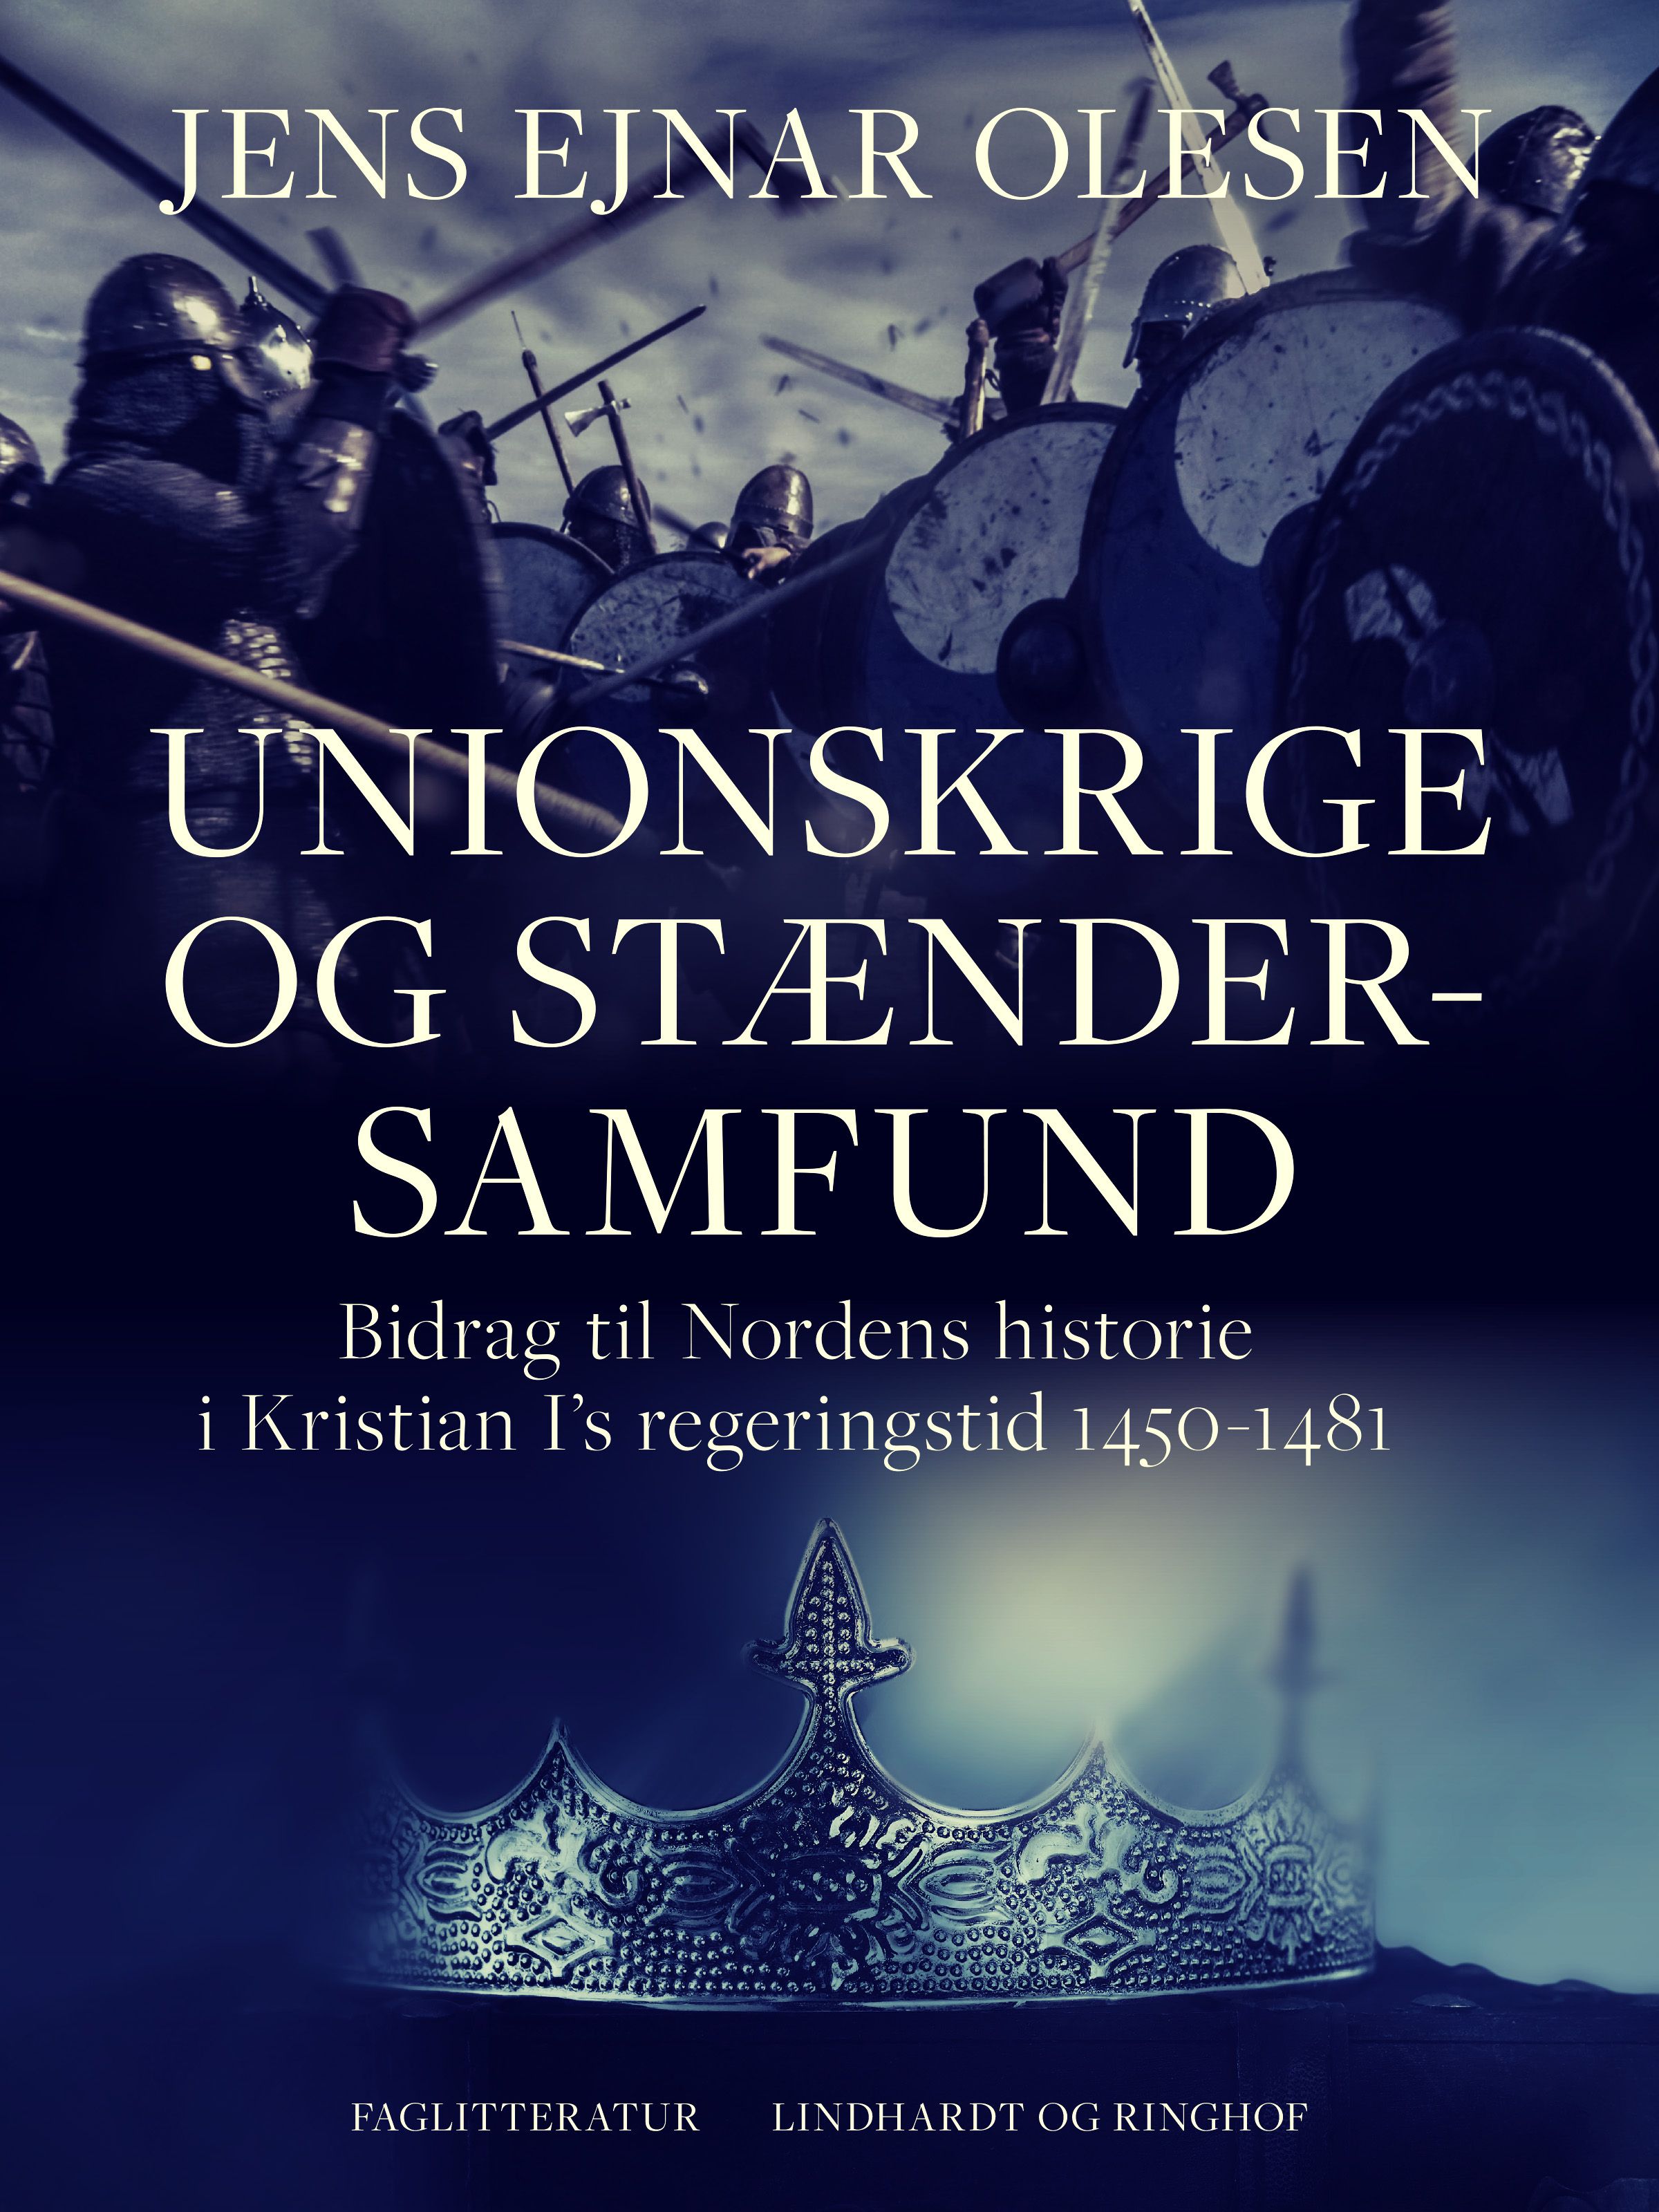 Unionskrige og stændersamfund. Bidrag til Nordens historie i Kristian I's regeringstid 1450-1481, e-bog af Jens Ejnar Olesen